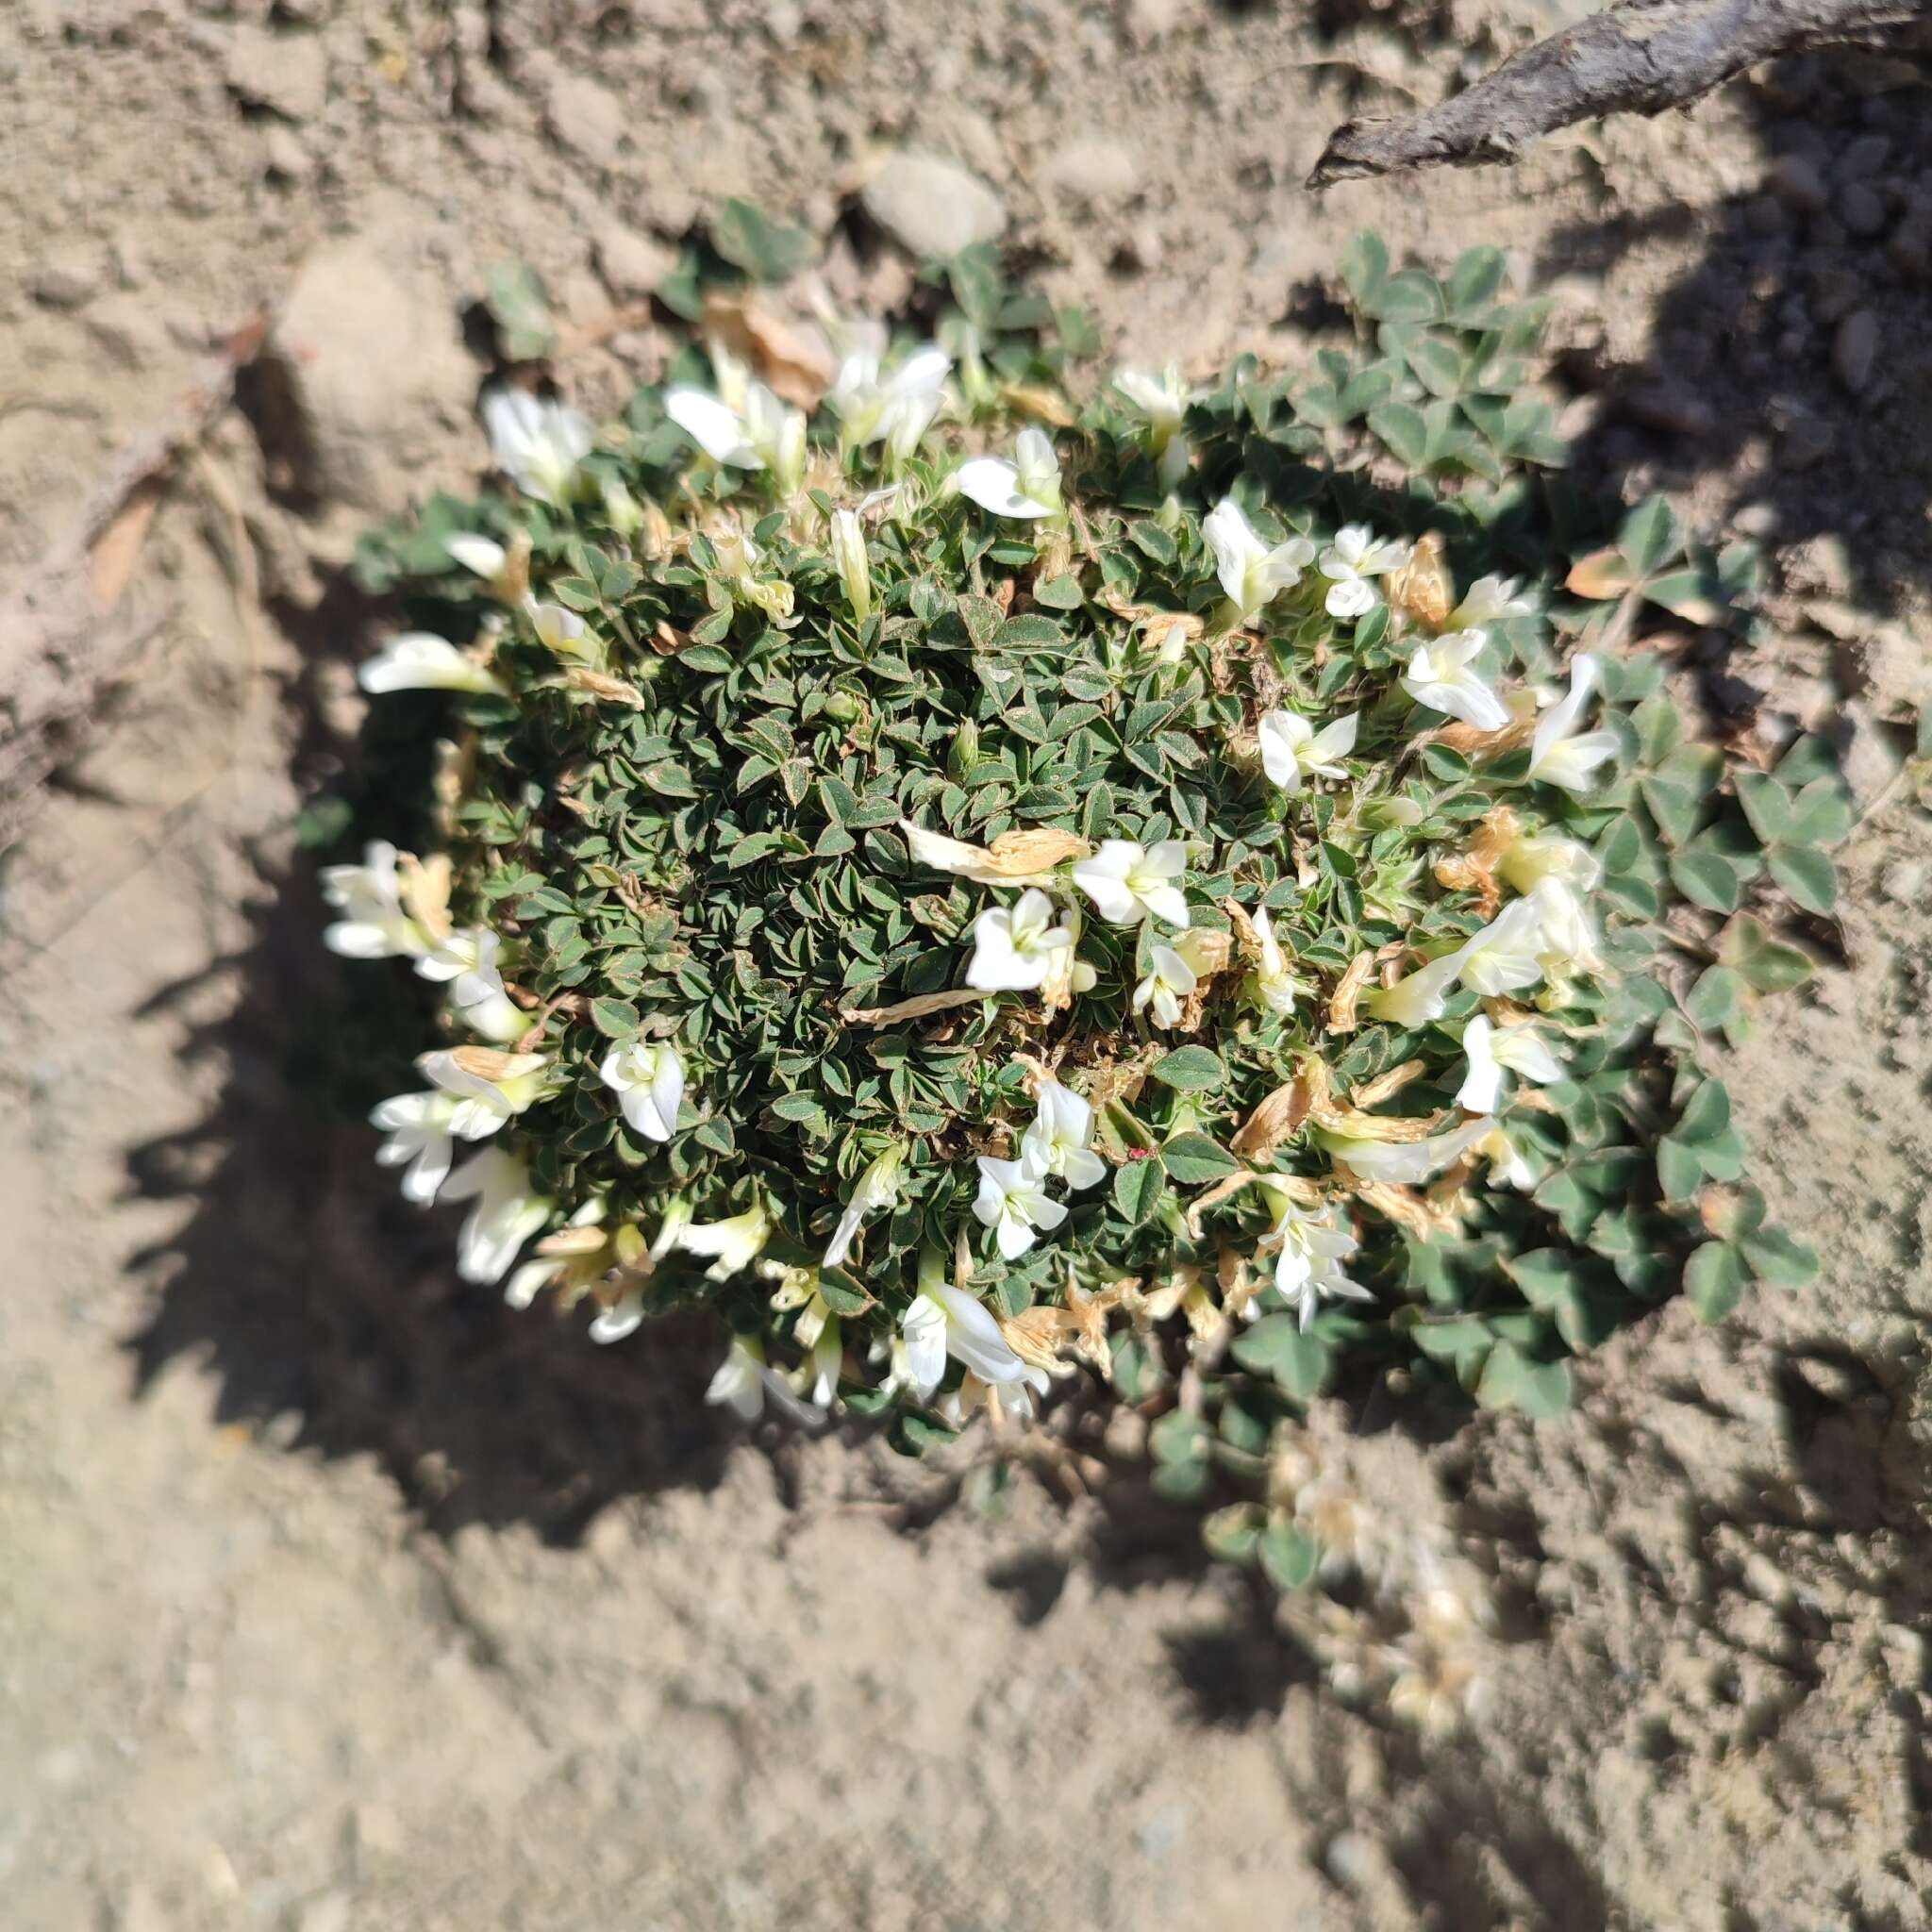 Image of oneflower clover